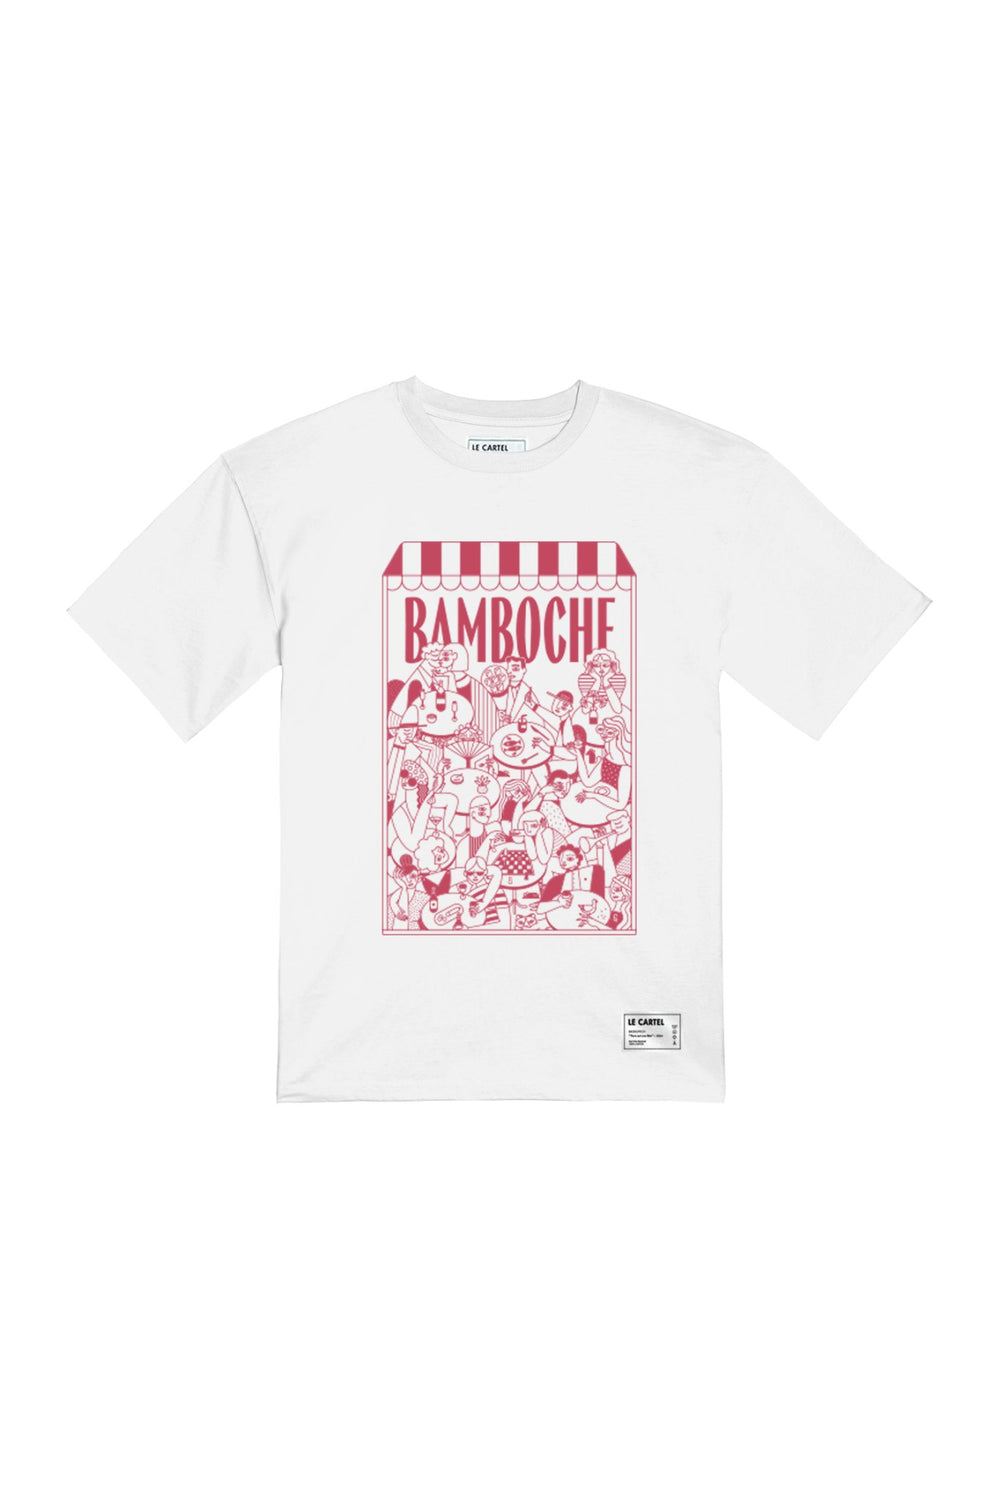 BAMBOCHE・T-shirt unisexe・Blanc - Le Cartel